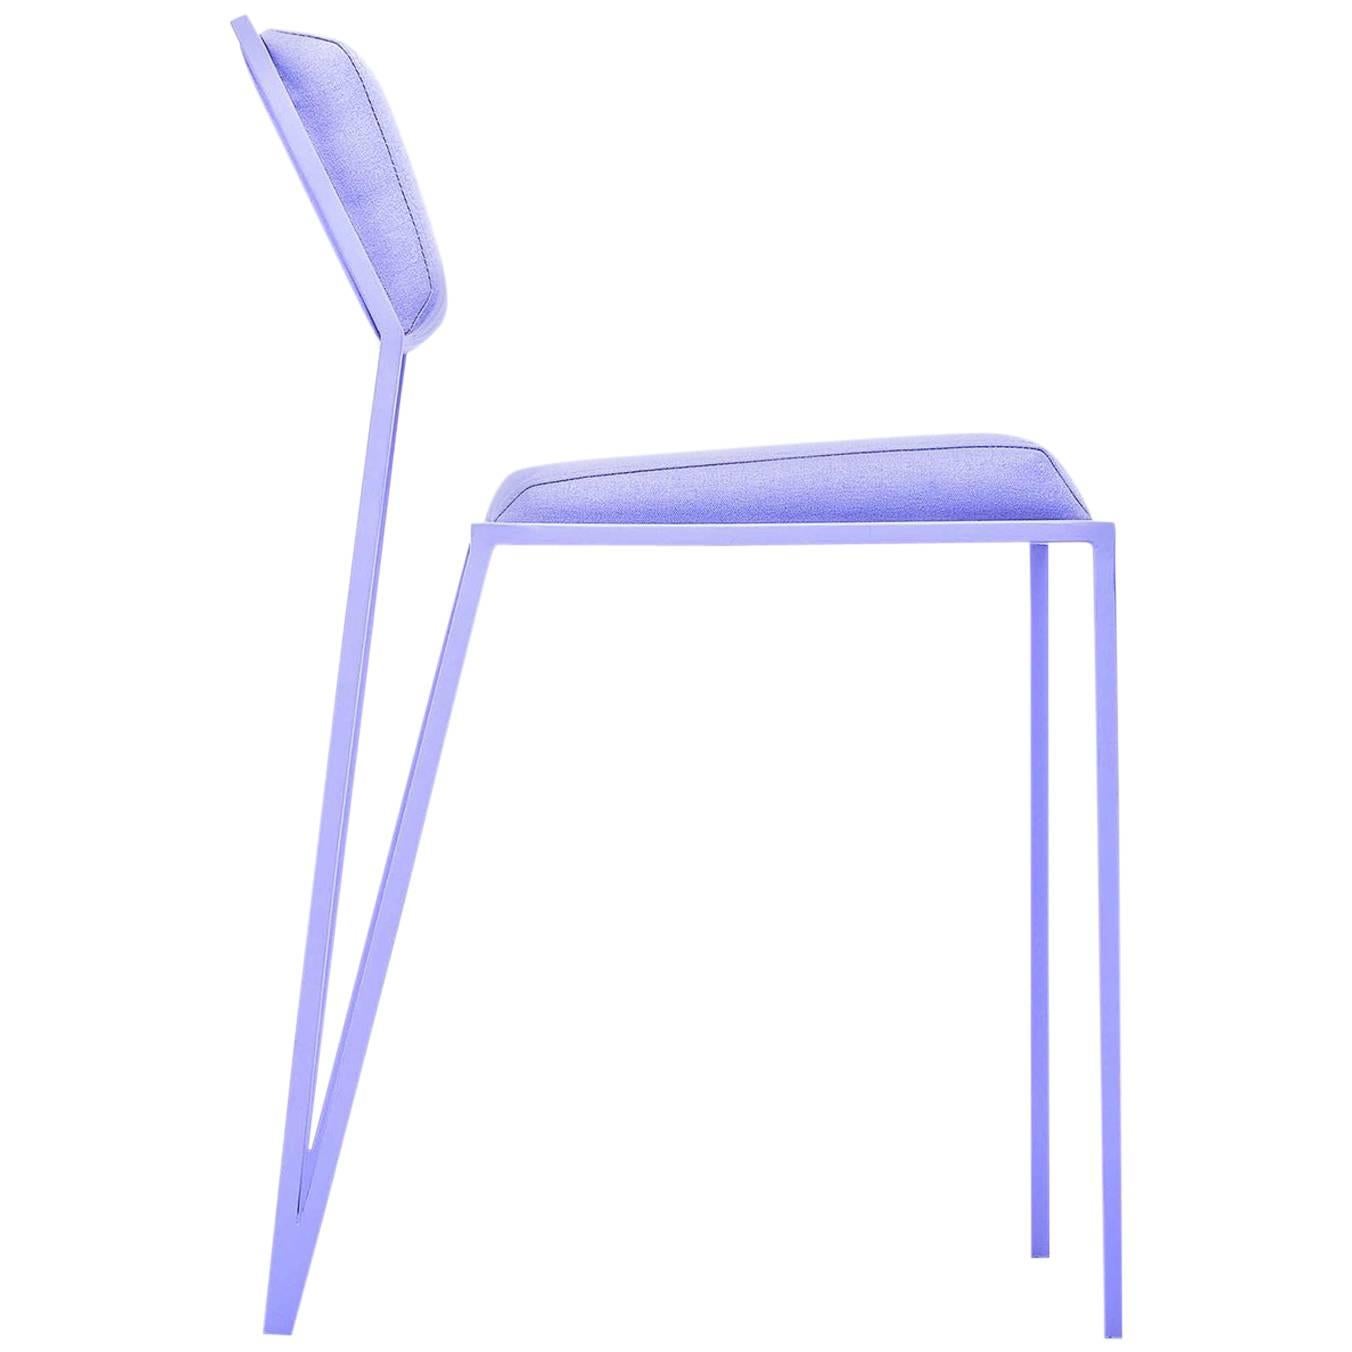 Minimalist Chair in Steel, Brazilian Contemporary Design, Lavender